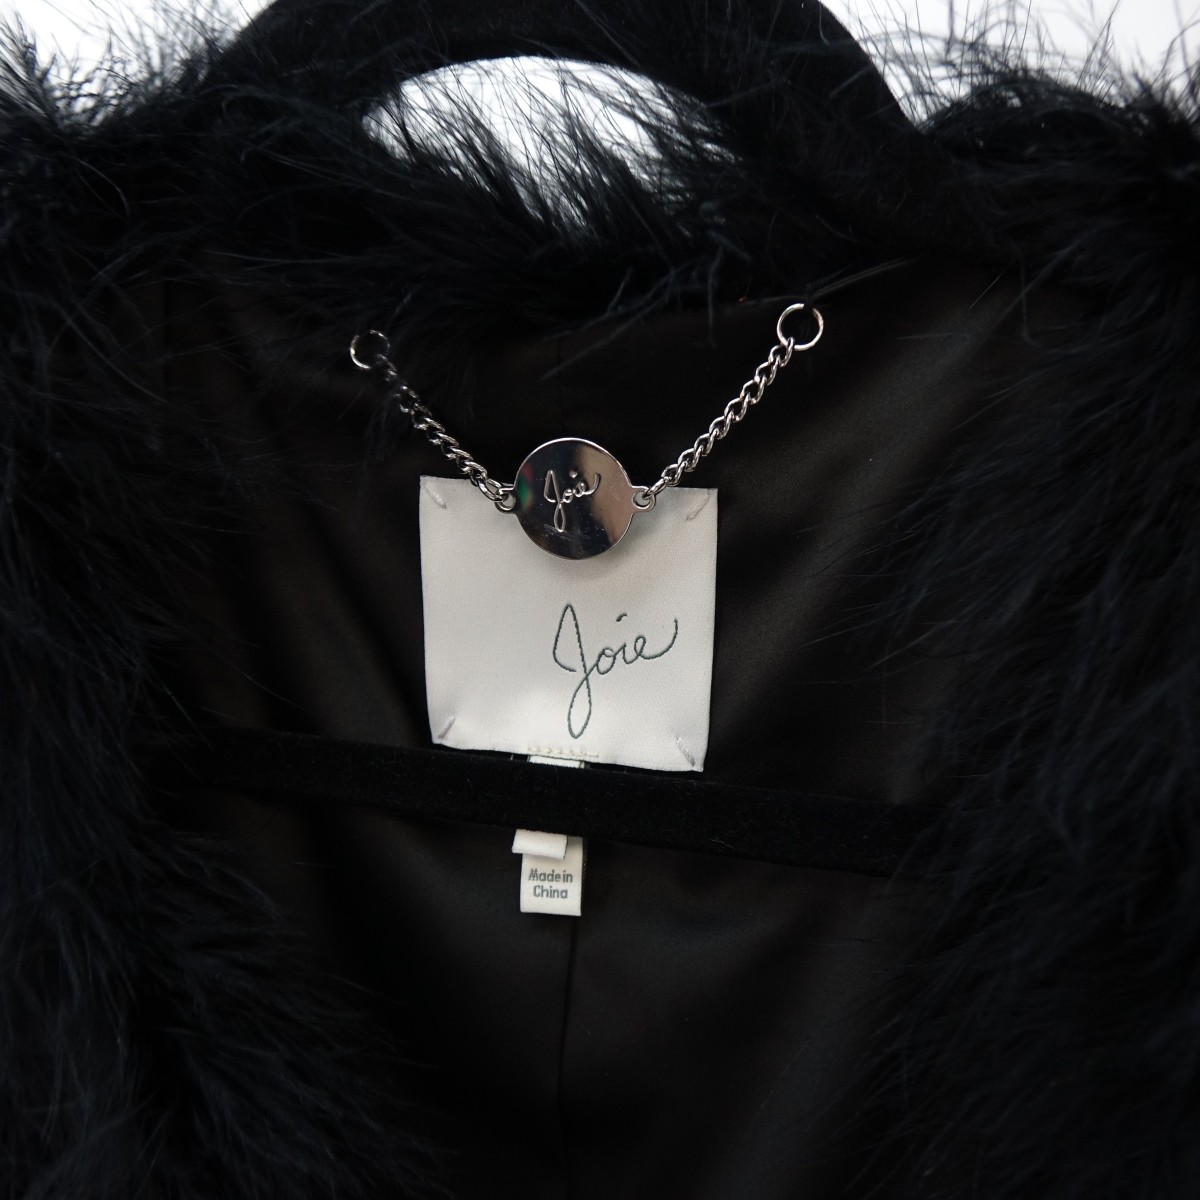 (3) Womens Designer Fur Vests